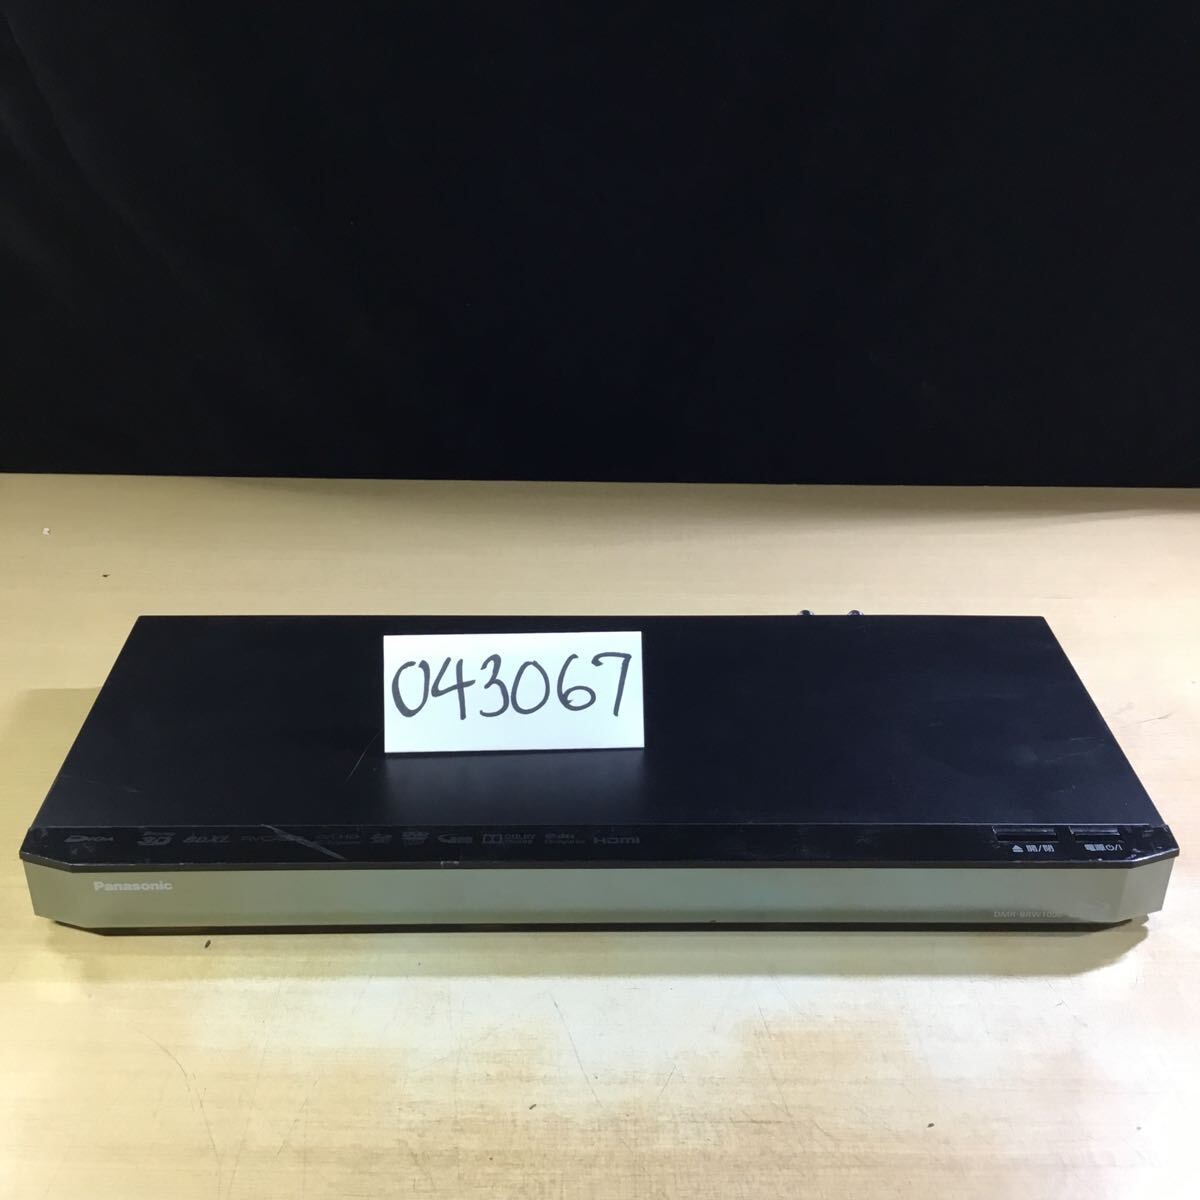 【送料無料】(043067F) 2015年製 Panasonic DMR-BRW1000 ブルーレイディスクレコーダー ジャンク品の画像1